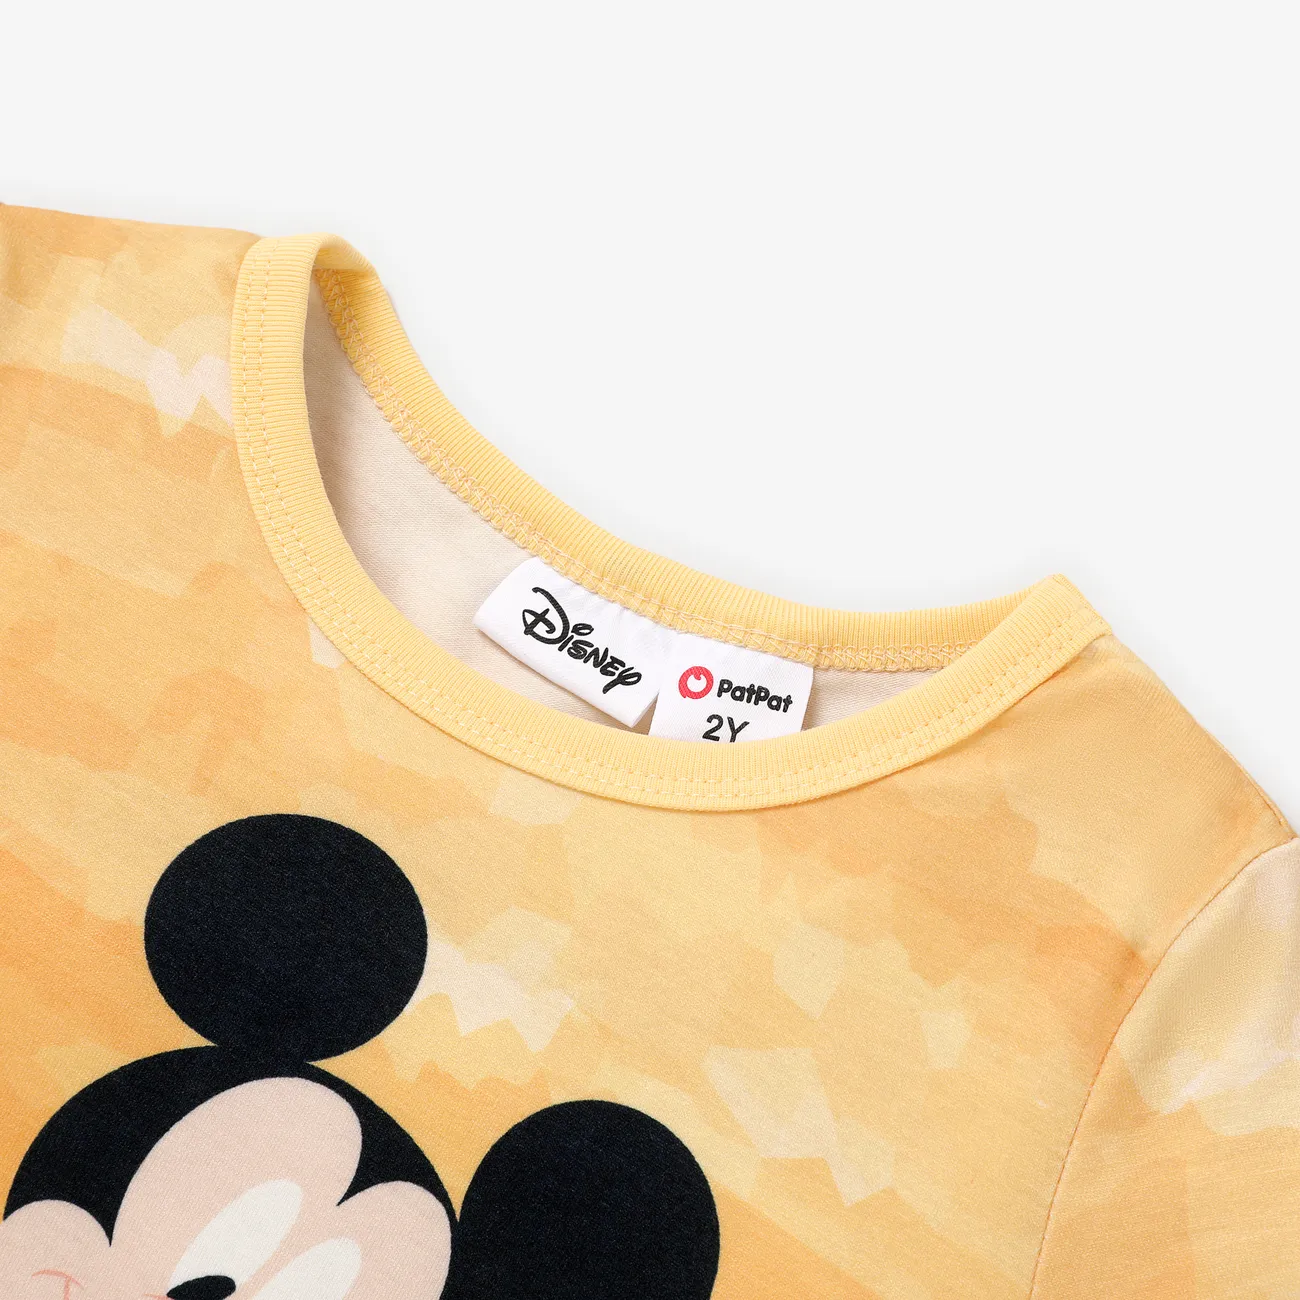 Disney Mickey and Friends Ostern Kleinkinder Unisex Kindlich Kurzärmelig T-Shirts Farbblock big image 1